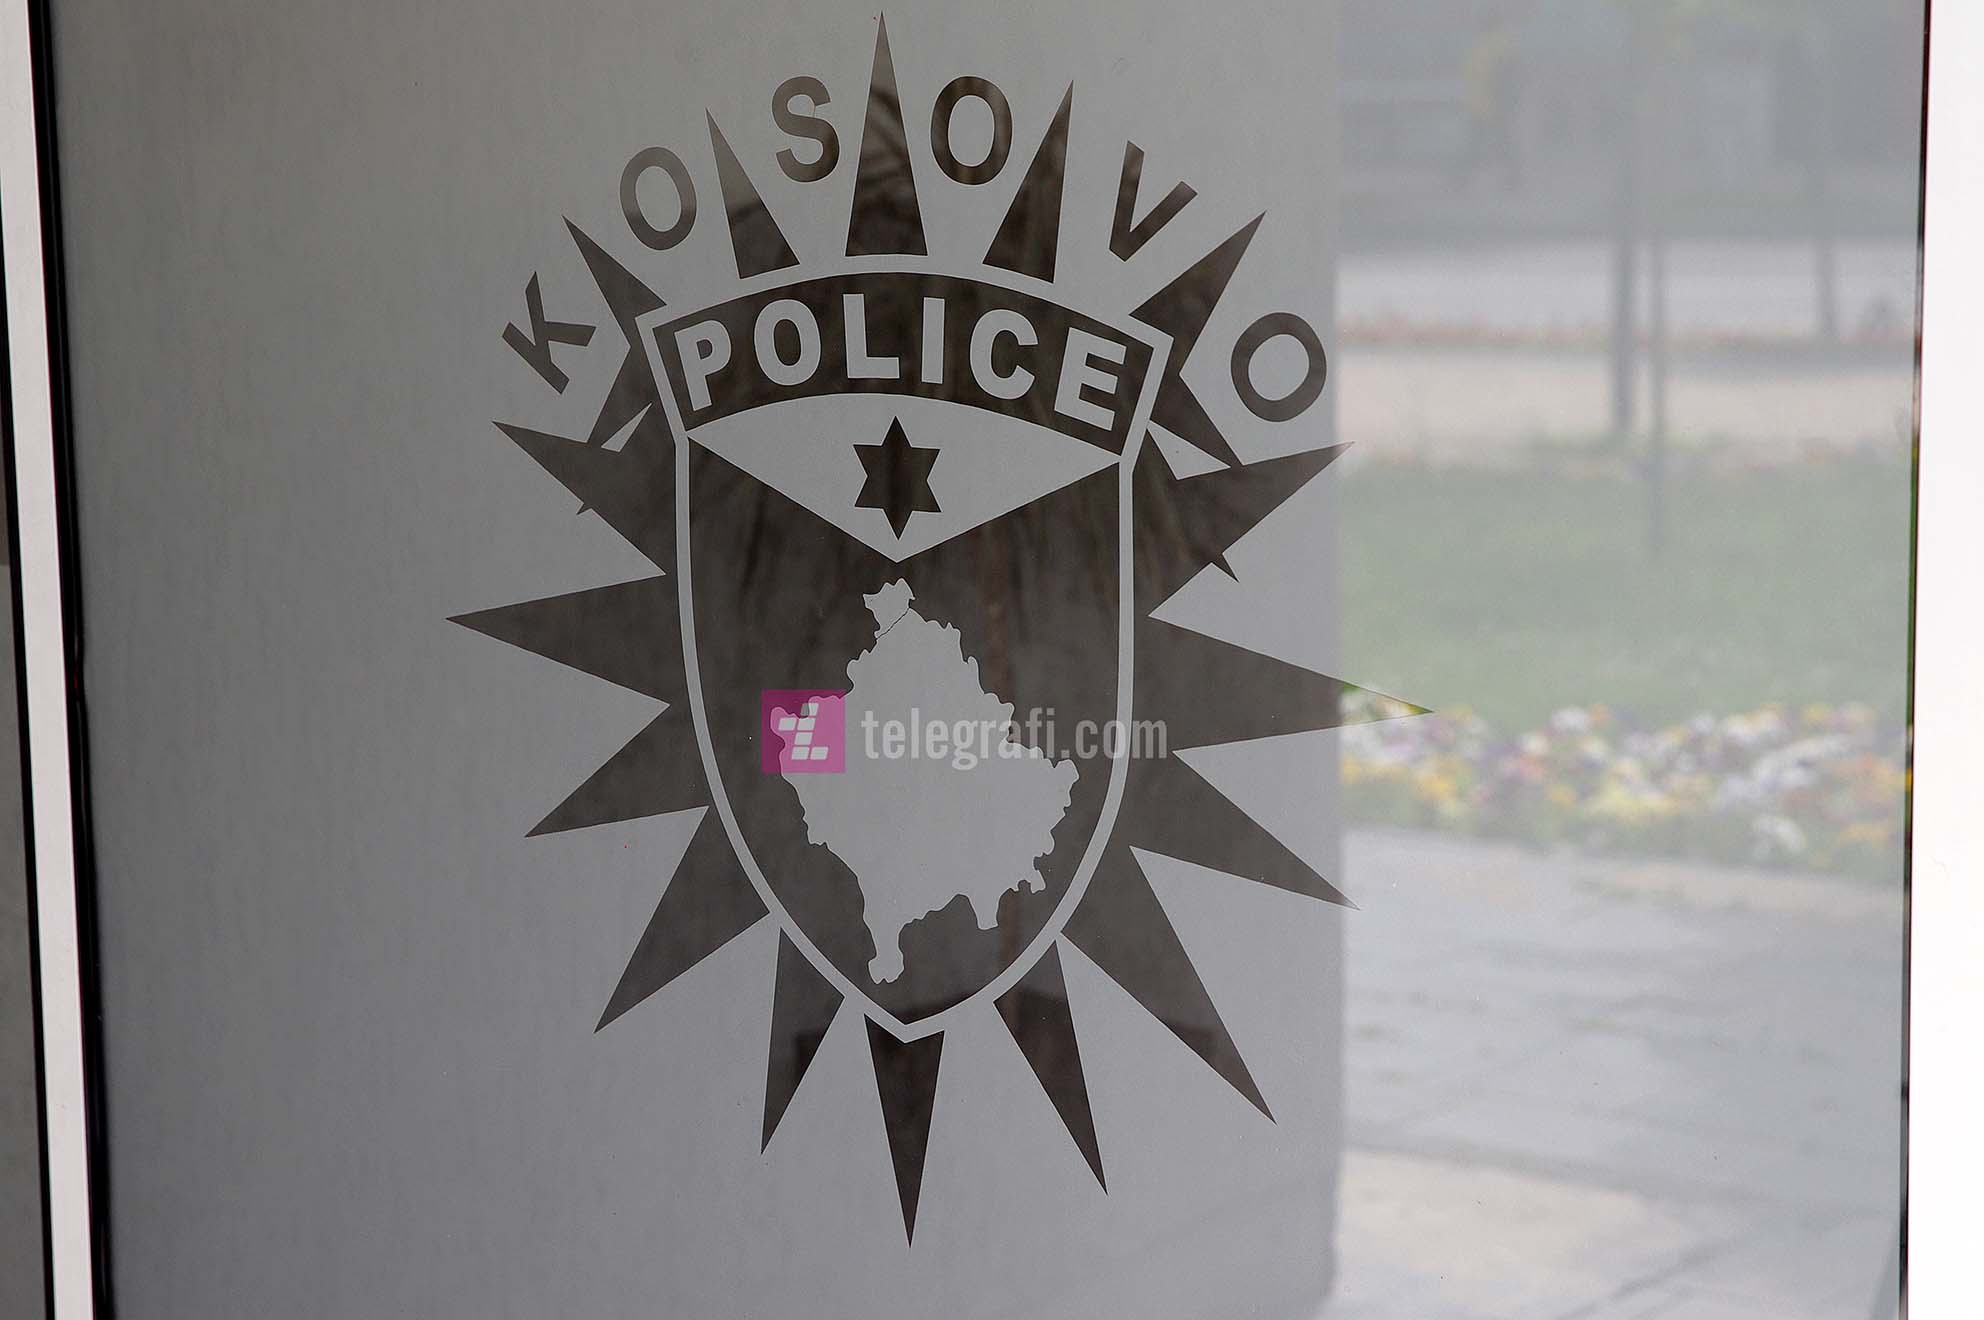 Vetura, armë, para e villa në Brezovicë – policia tregon se çfarë u konfiskua tjetër pas gjetjes së 83 kilogramë heroinë në Han të Elezit